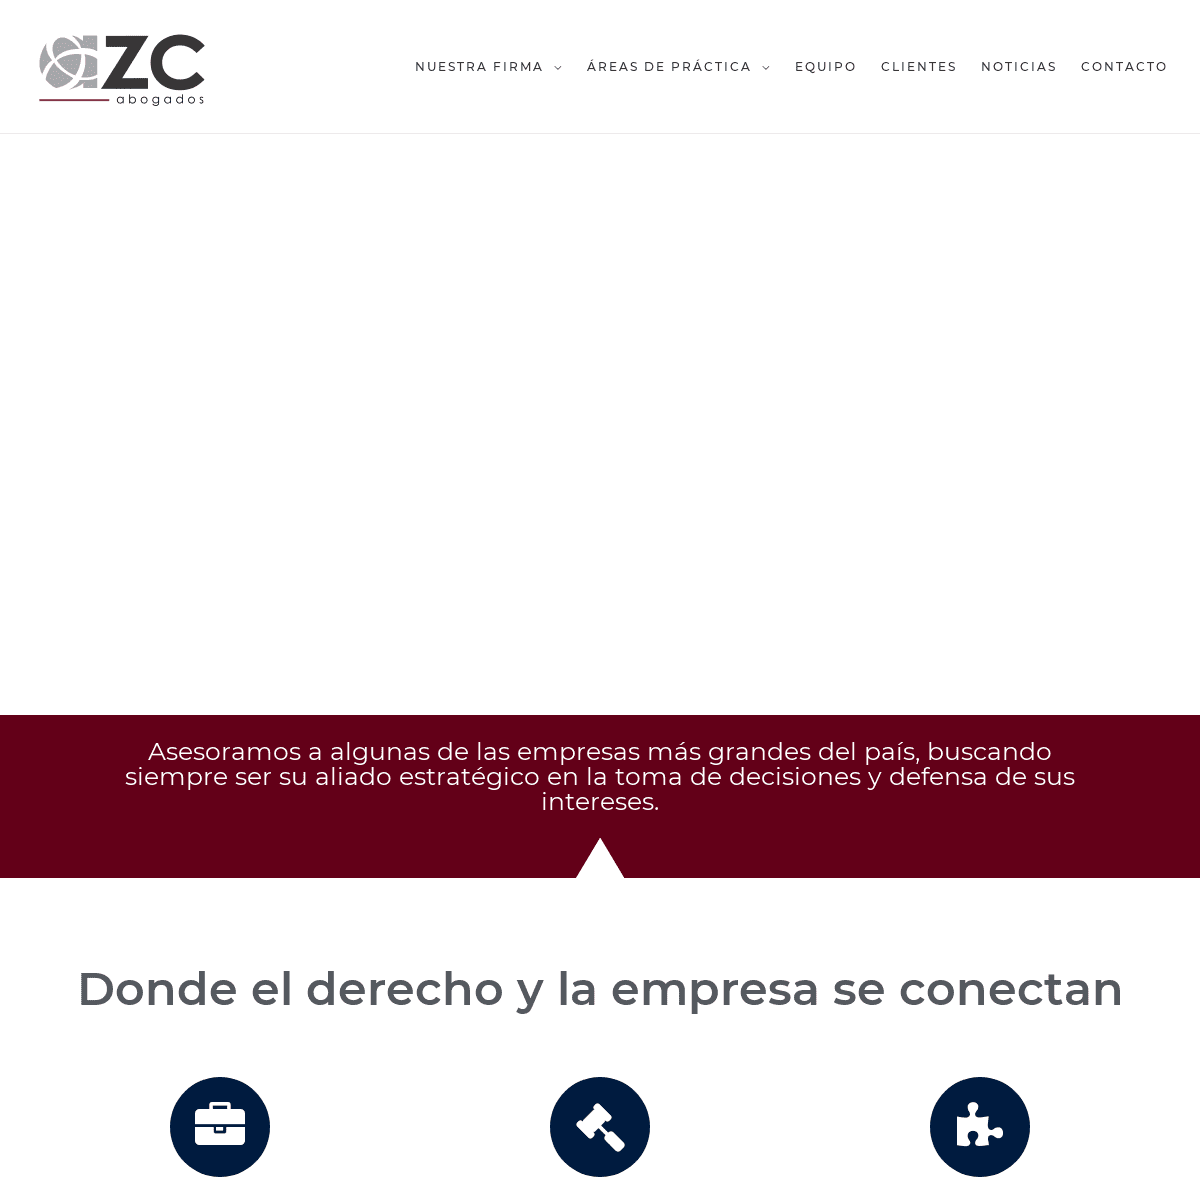 AZC abogados - Líderes en el mercado Colombiano